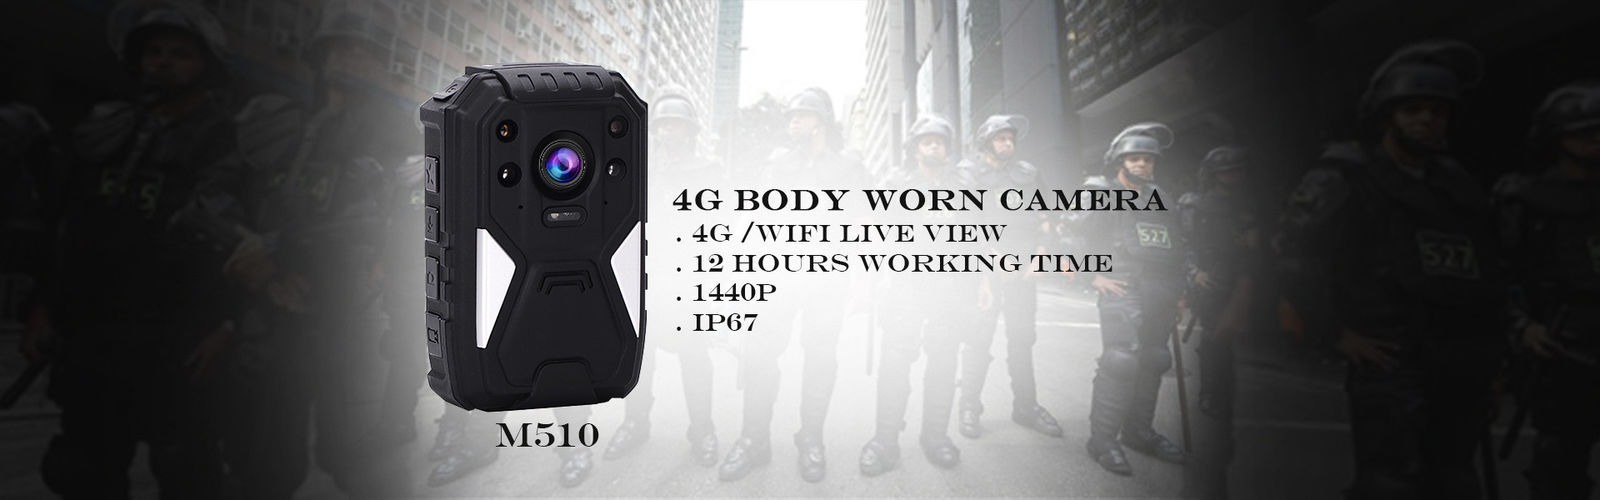 چین بهترین دوربین بدن 4G برای فروش